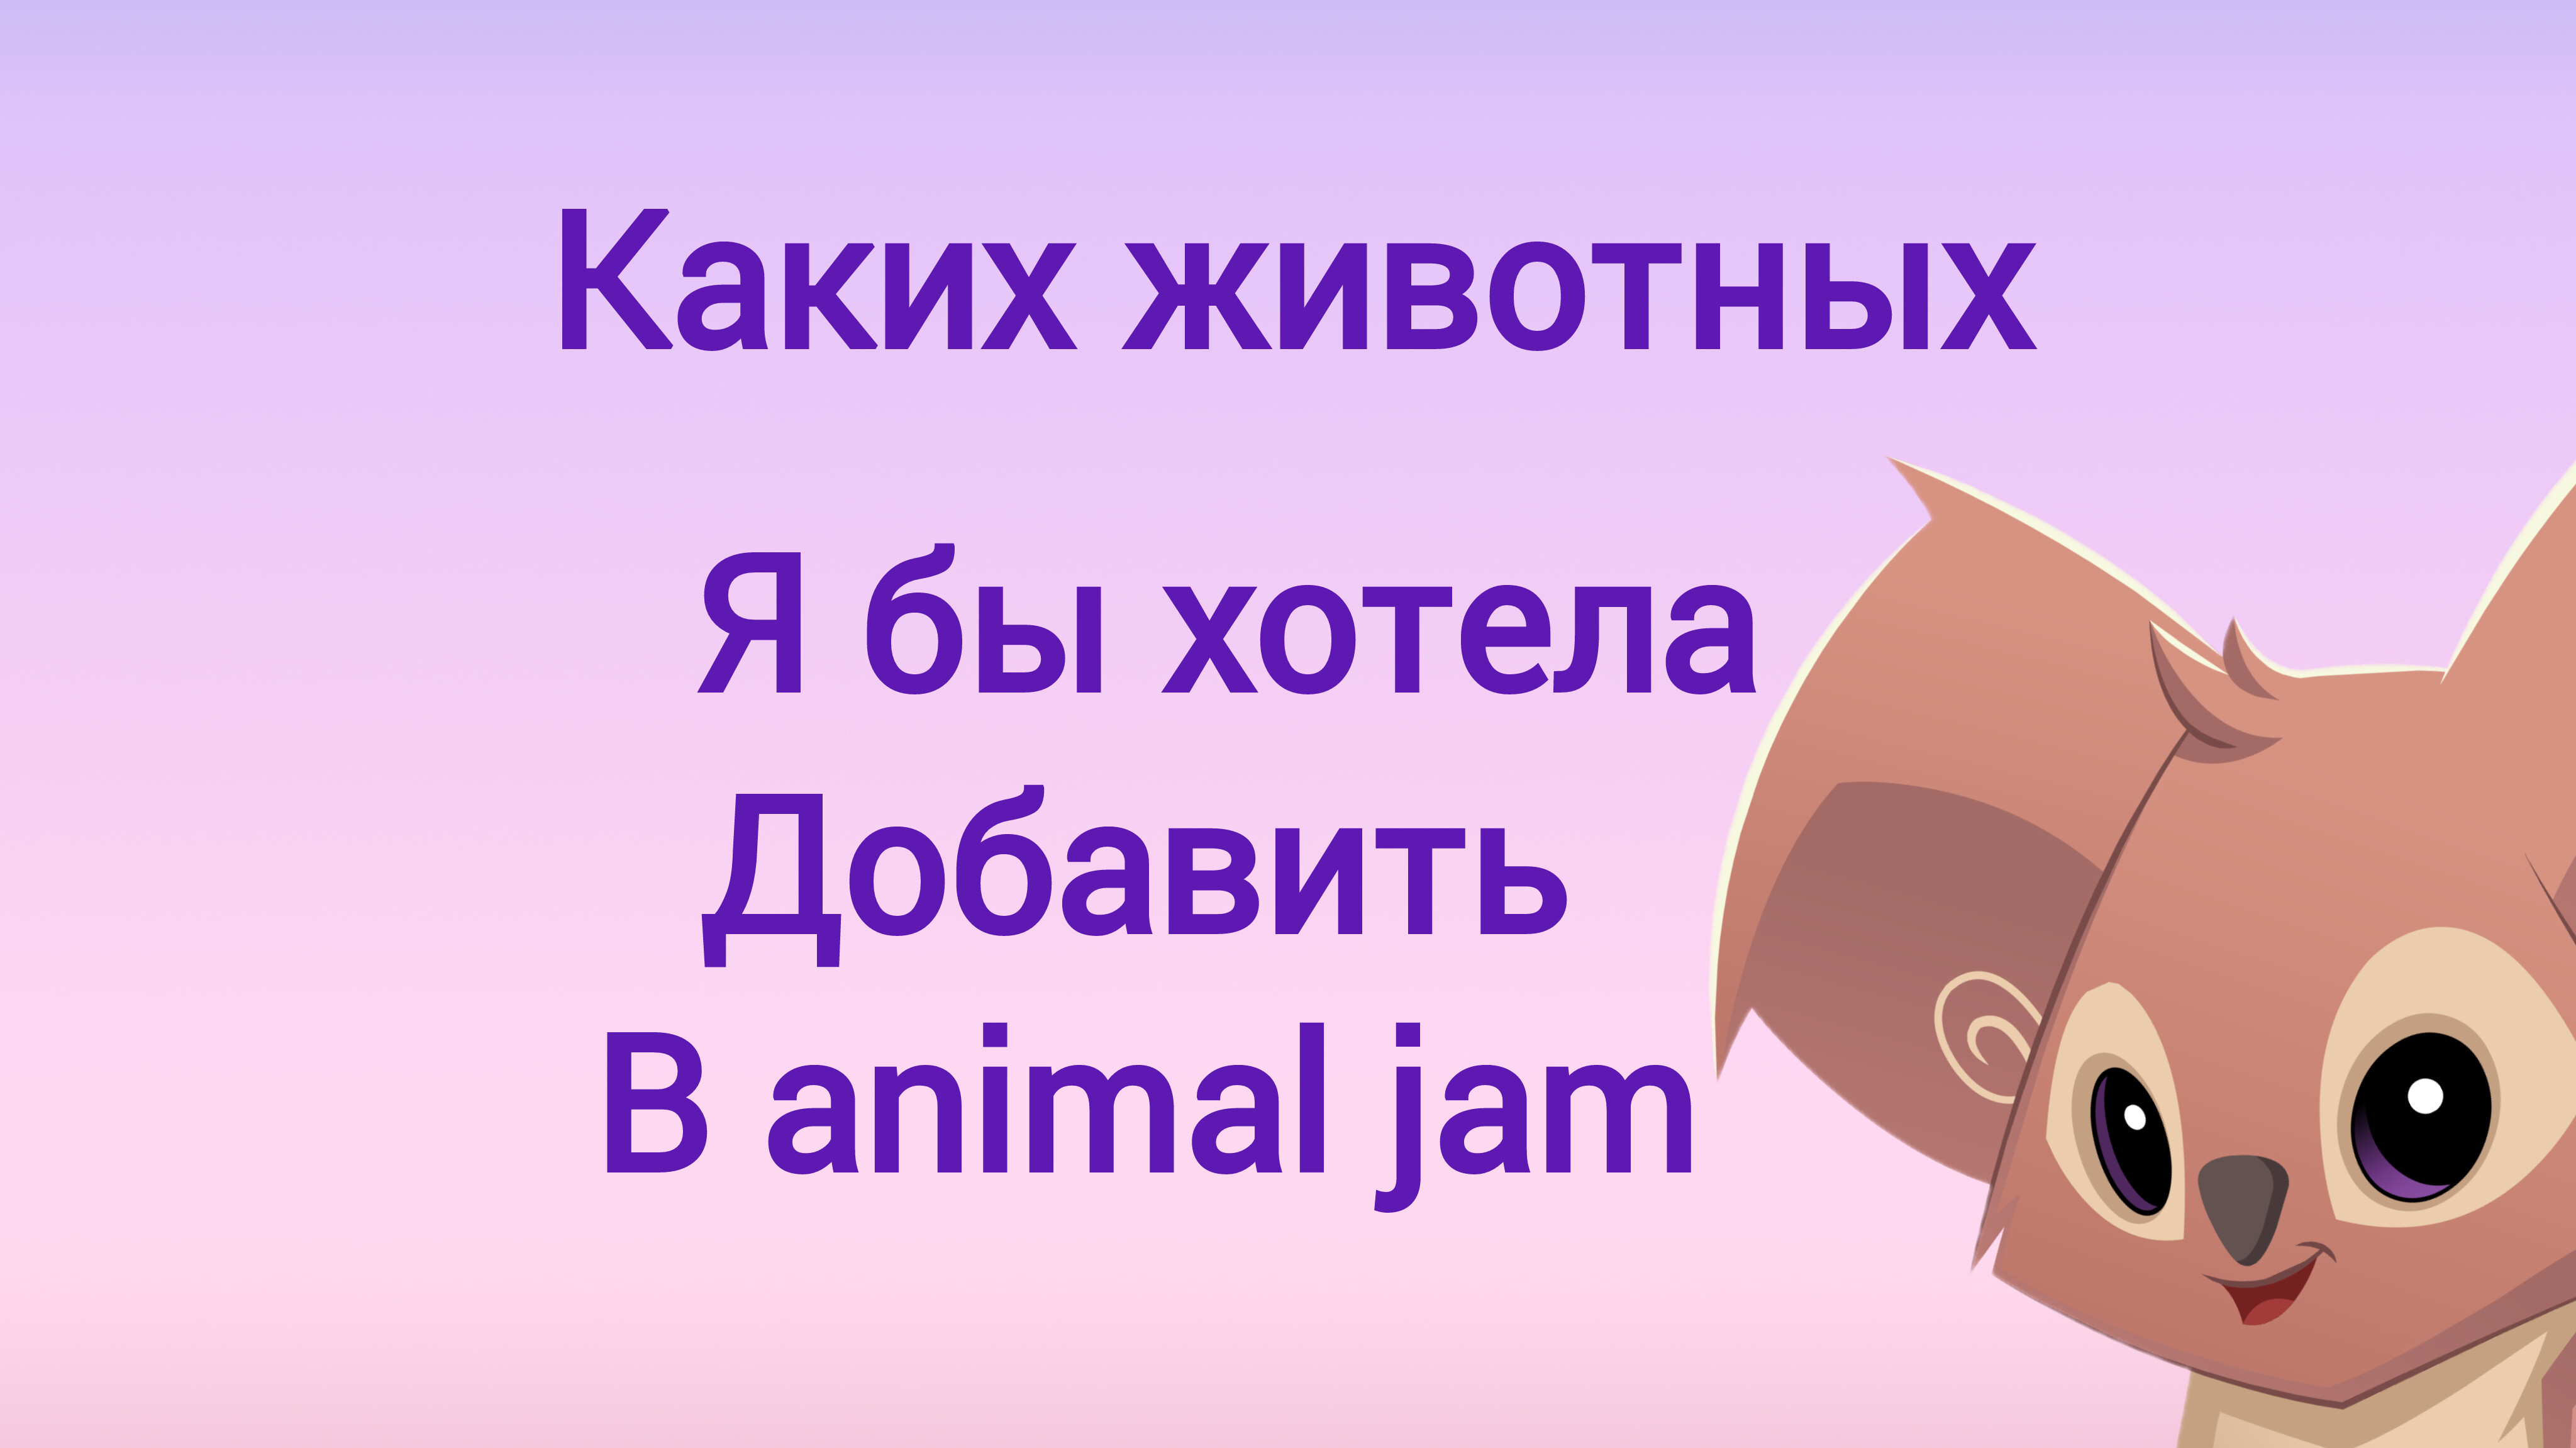 Каких животных я бы хотела добавить в animal jam?